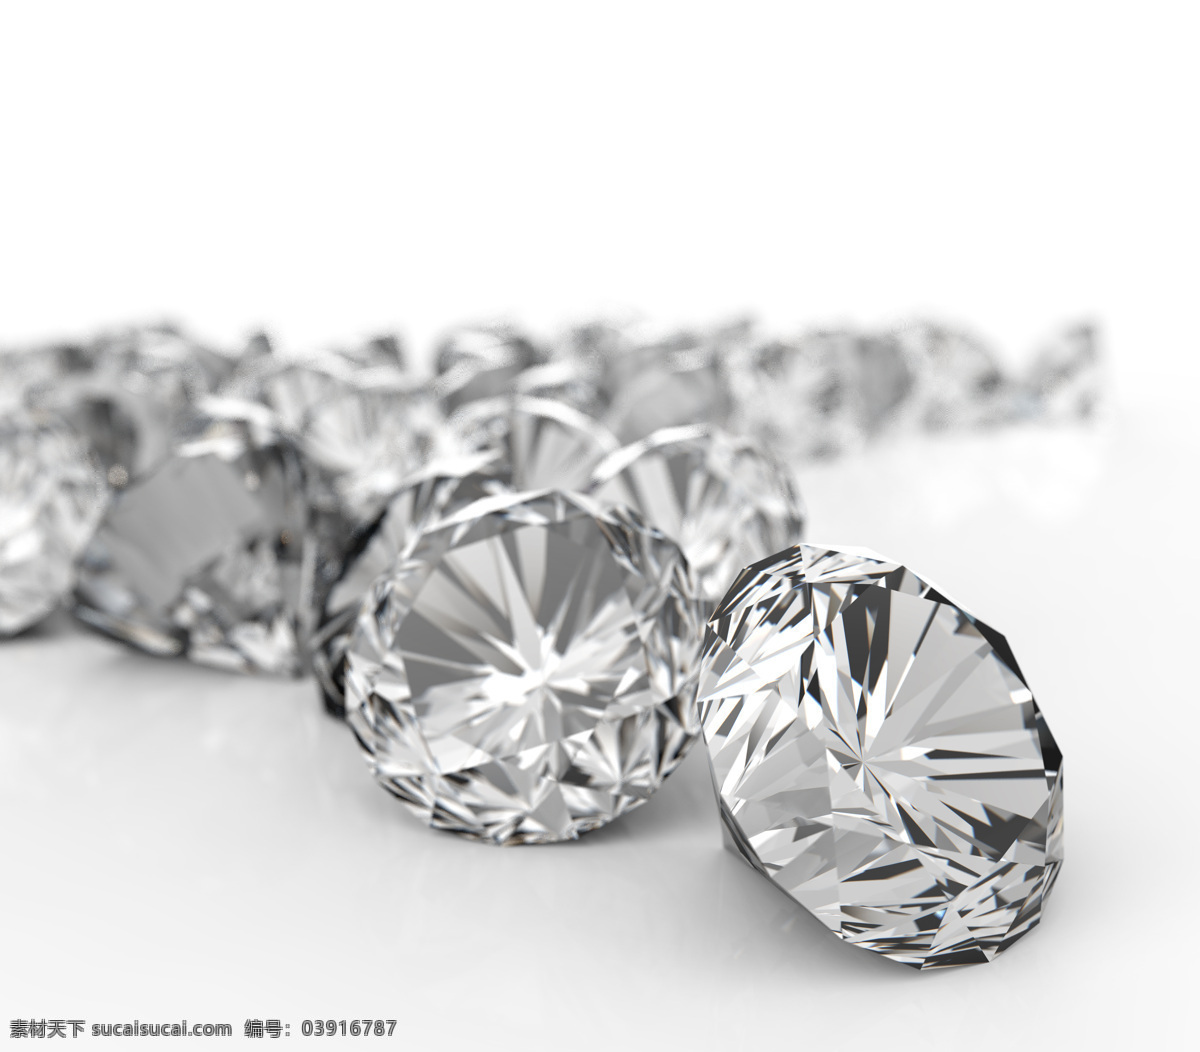 钻石首饰 钻石 宝石 钻石珠宝 珠宝首饰 珠宝服饰 生活百科 白色